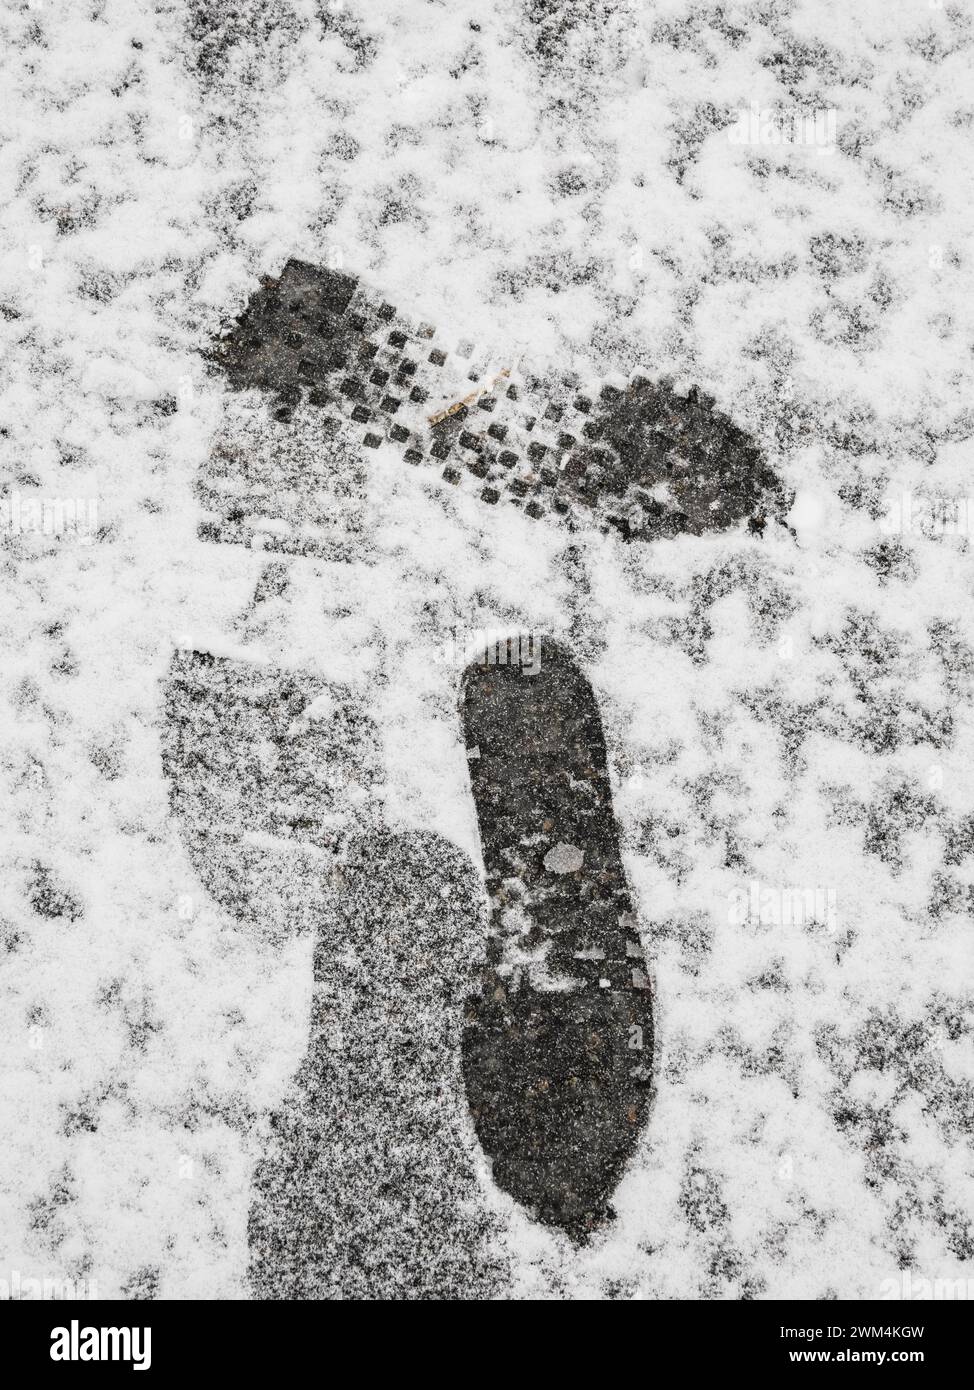 Une paire d'empreintes de pas laisse une marque sur une couverture de neige fraîchement tombée couvrant une rue à Gothenburg, capturant un moment solitaire un jour d'hiver. Banque D'Images